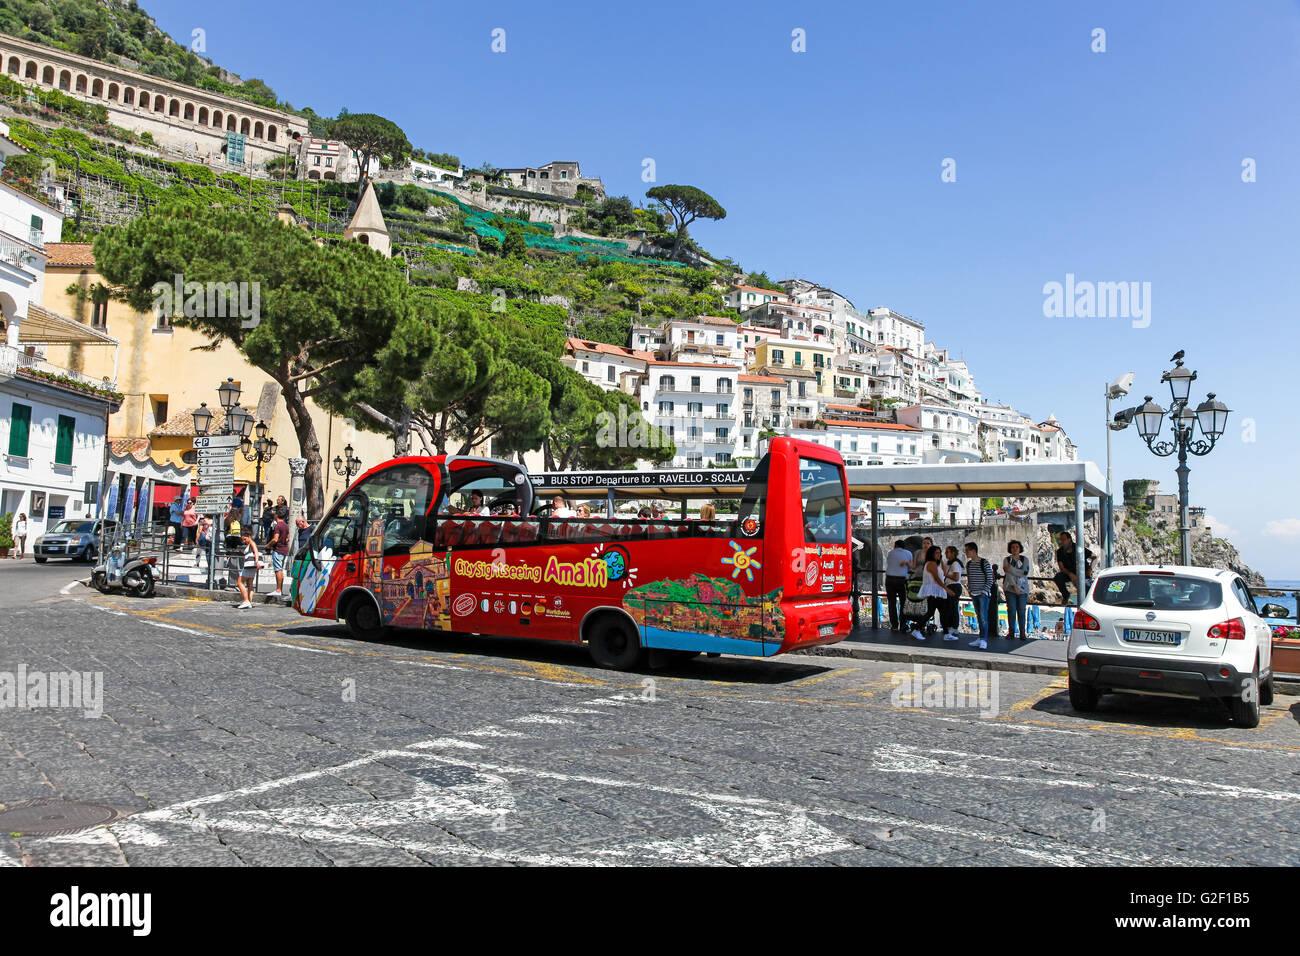 Eine offene Top Sightseeing Touristenbus warten im Zentrum von Amalfi nach Revello Amalfi Küste Italien Europa Stockfoto